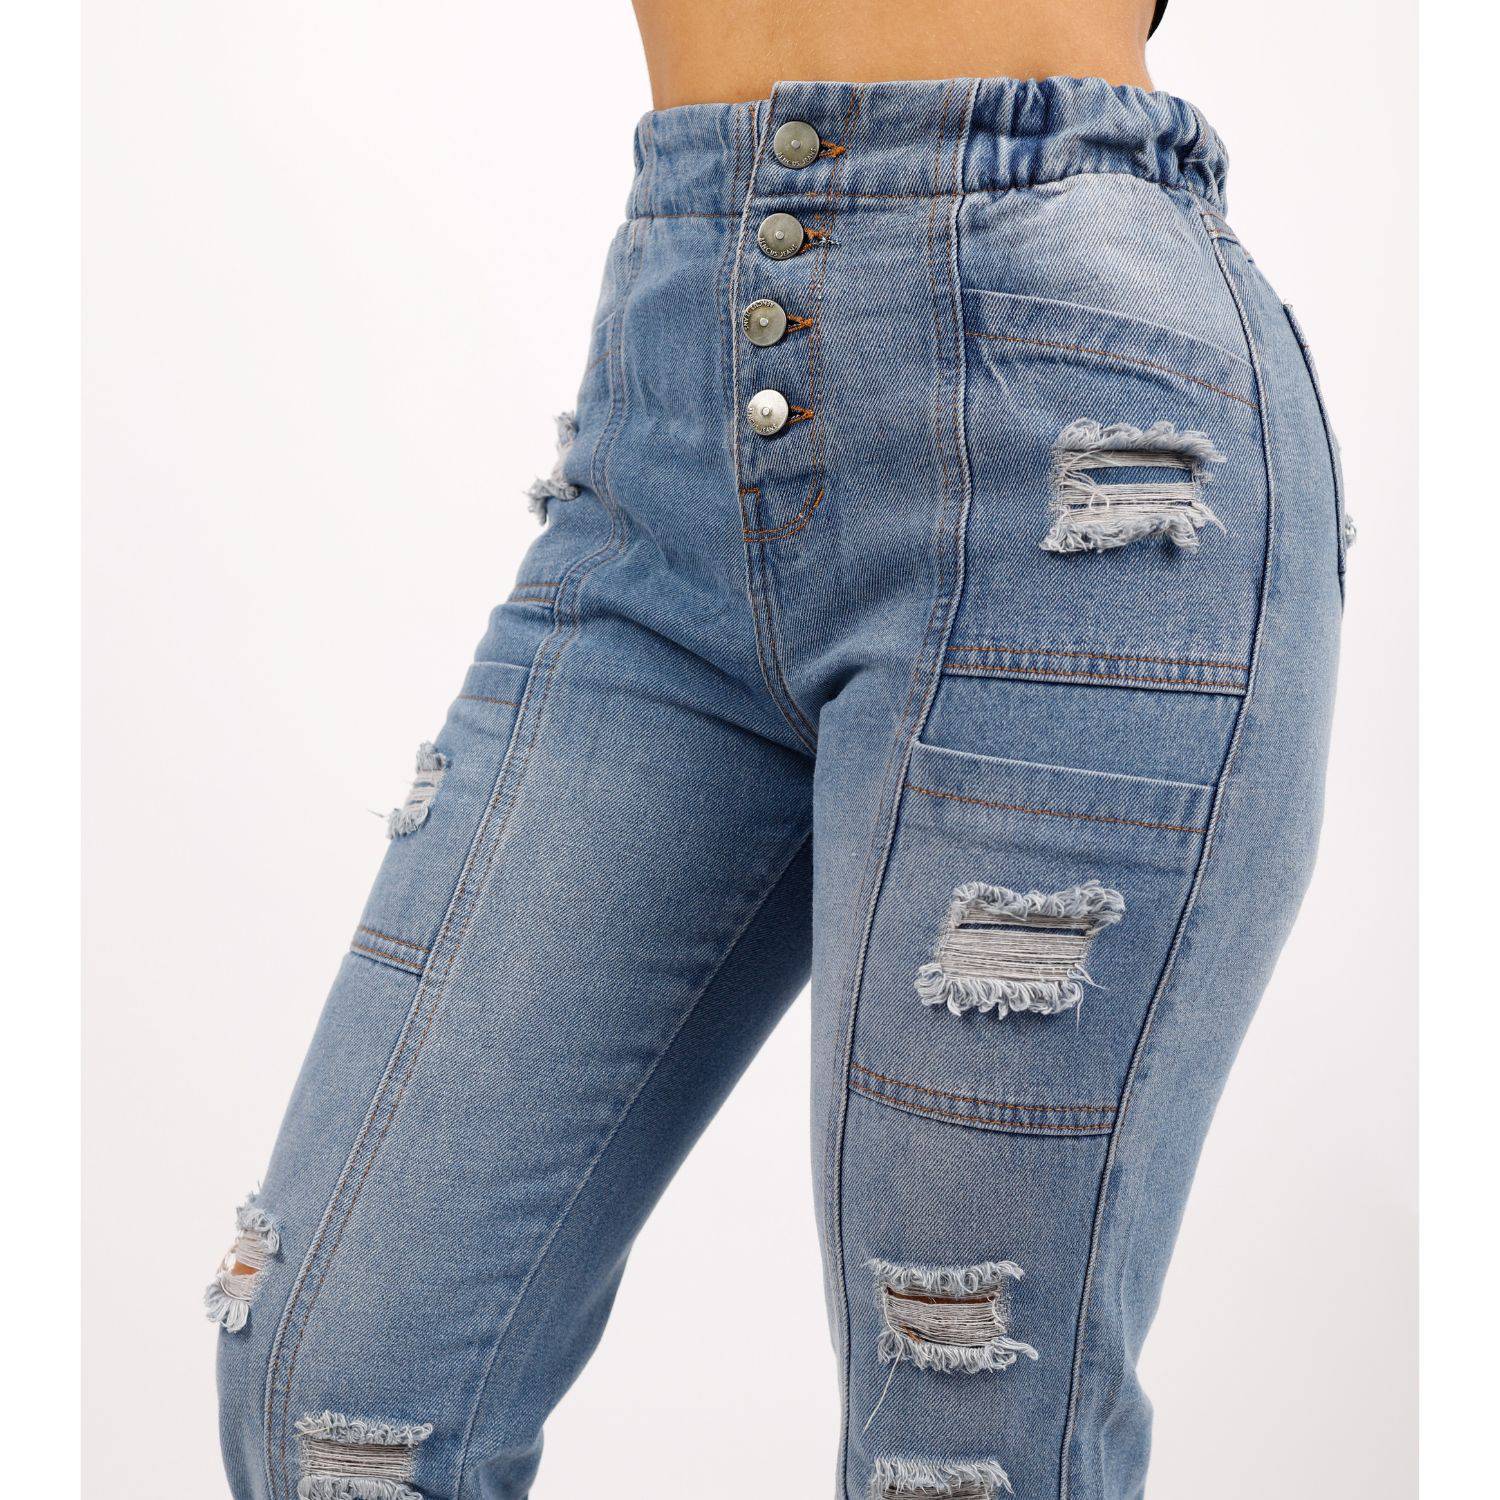 Baggy Elastic Jeans Mujer Rasgado